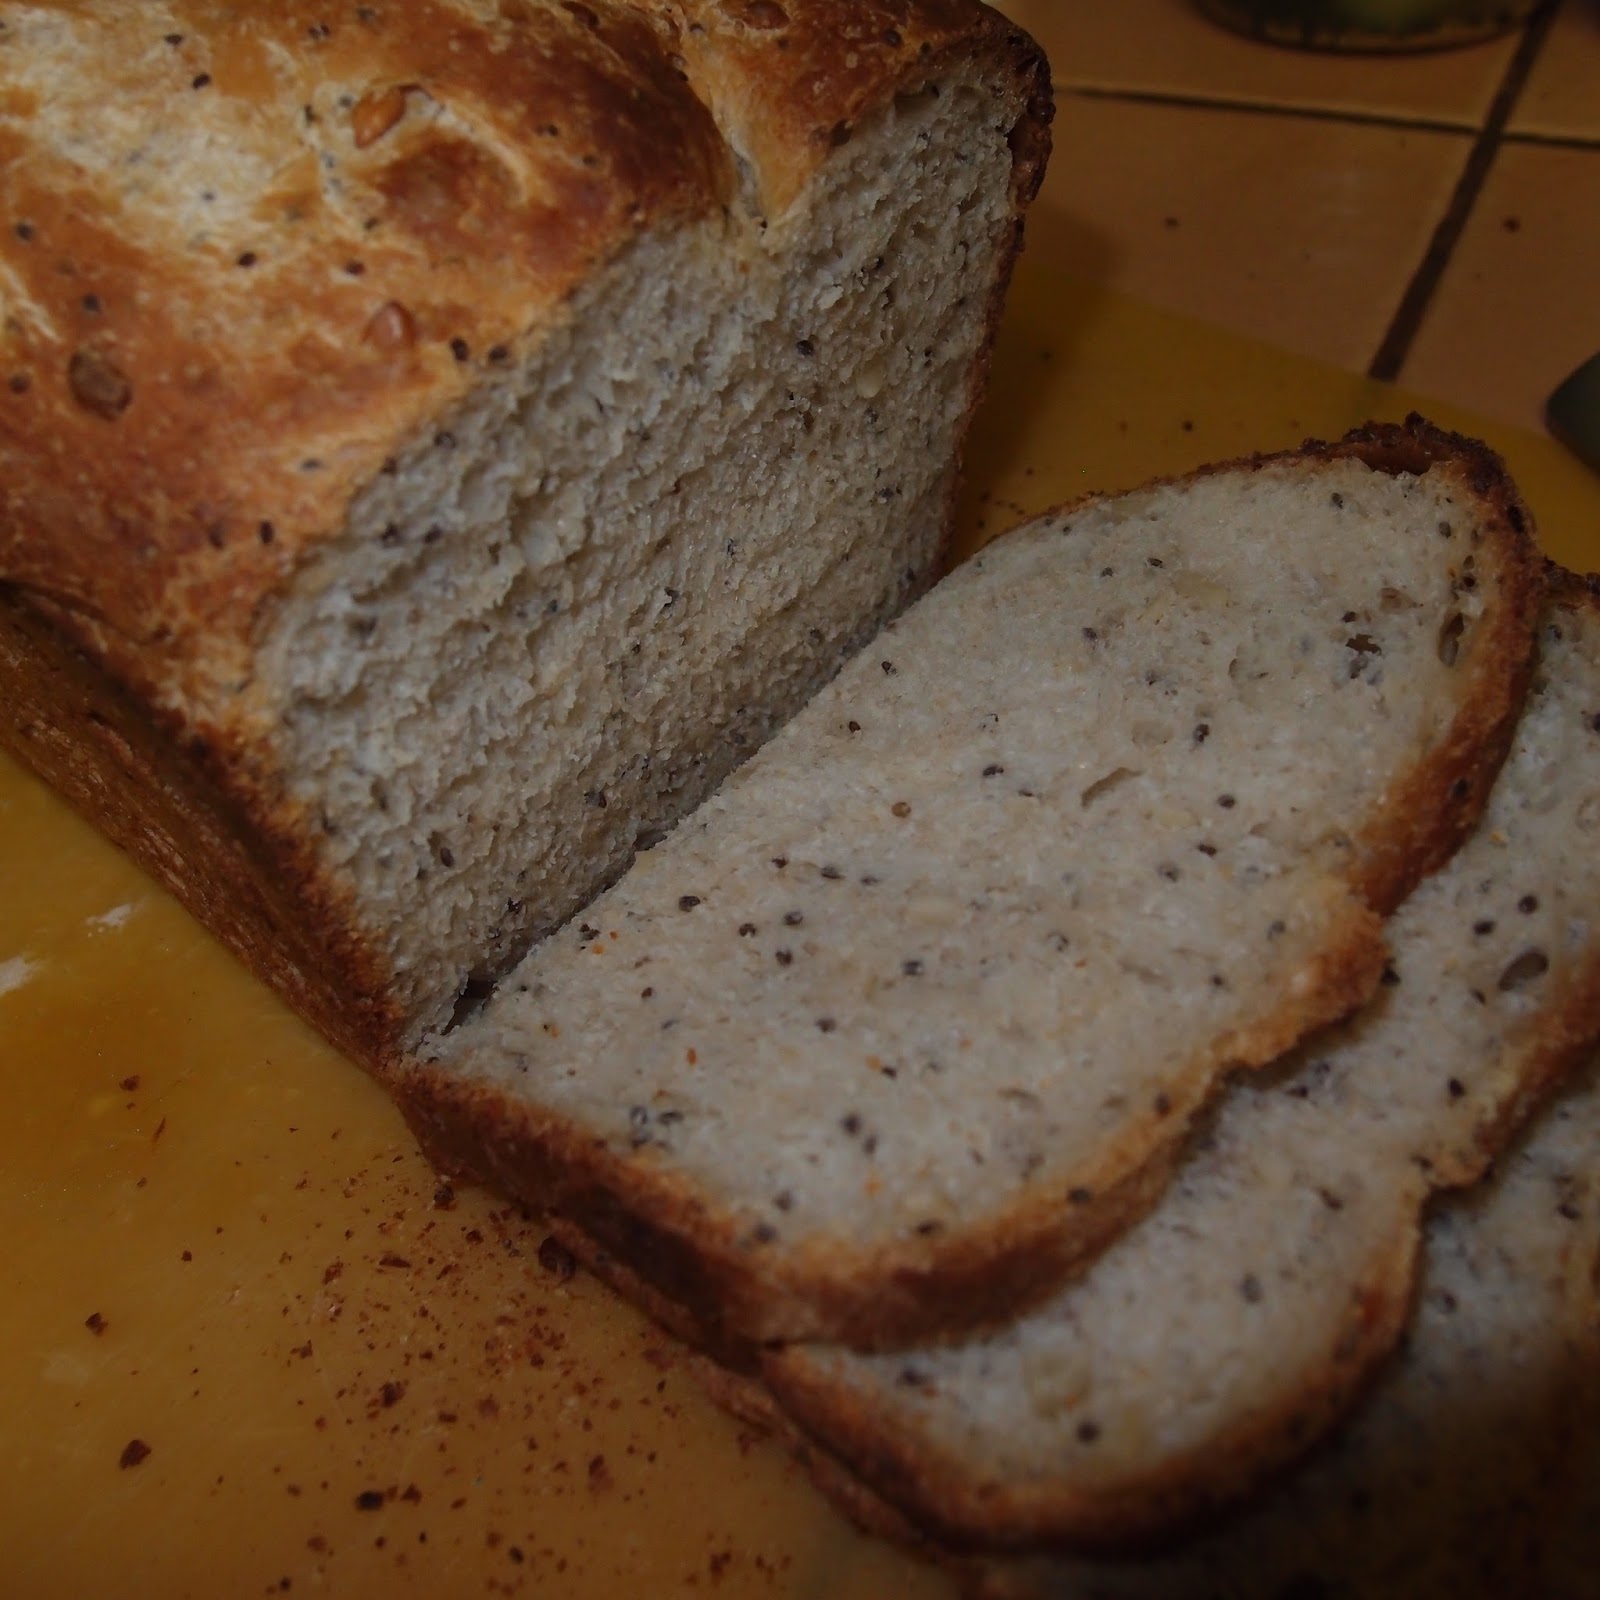 eight acres: a soaked dough bread recipe